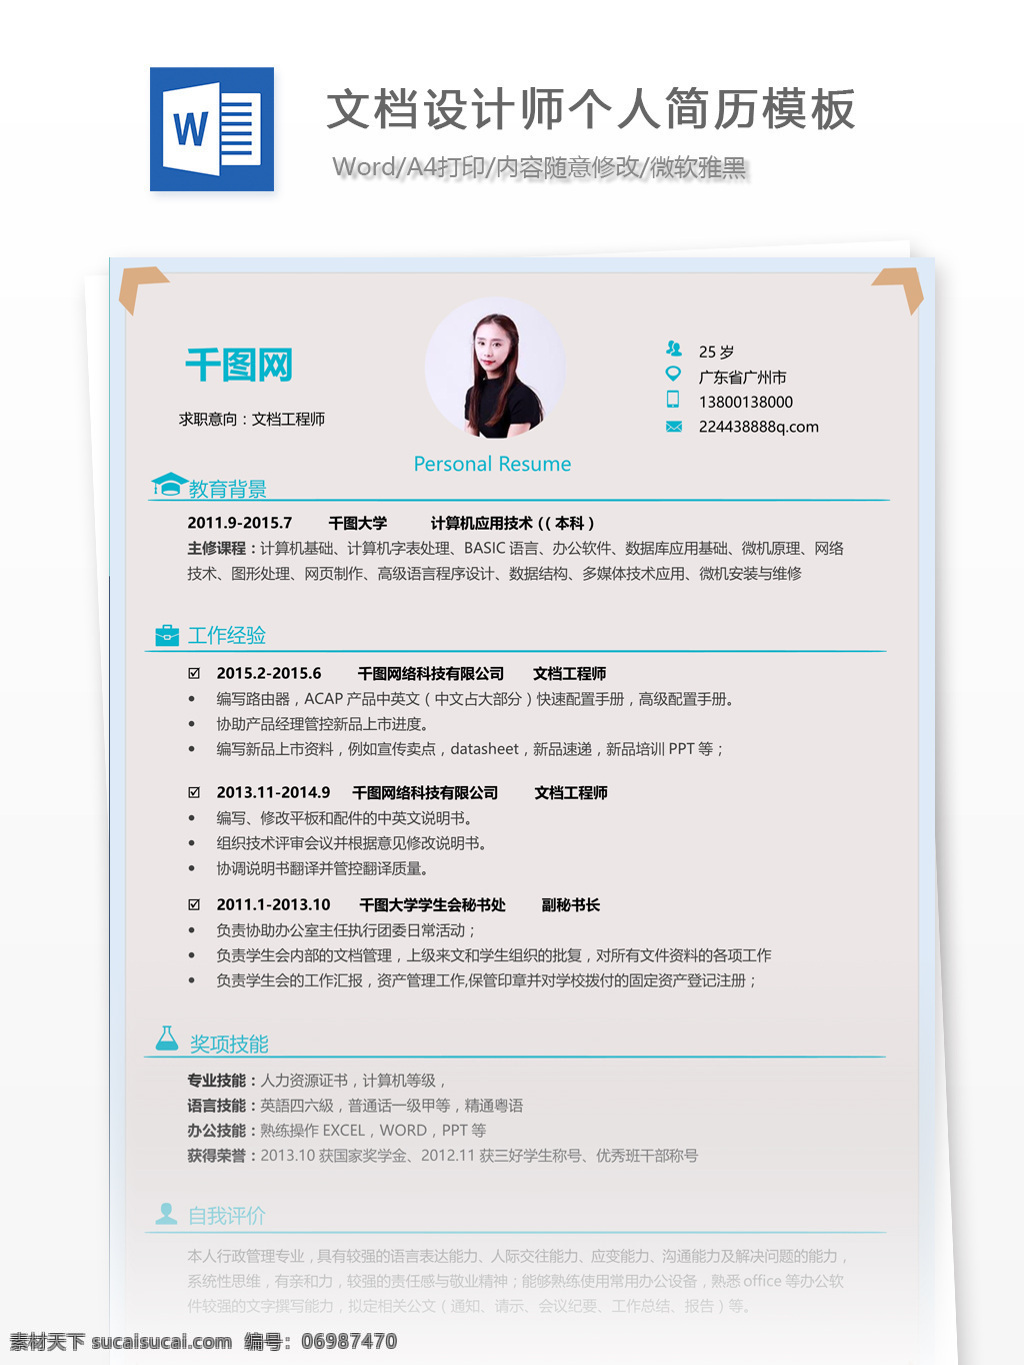 王 小虎 文档 设计师 个人简历 模板 简历模板 个人简历模板 简历 应届生 文档设计